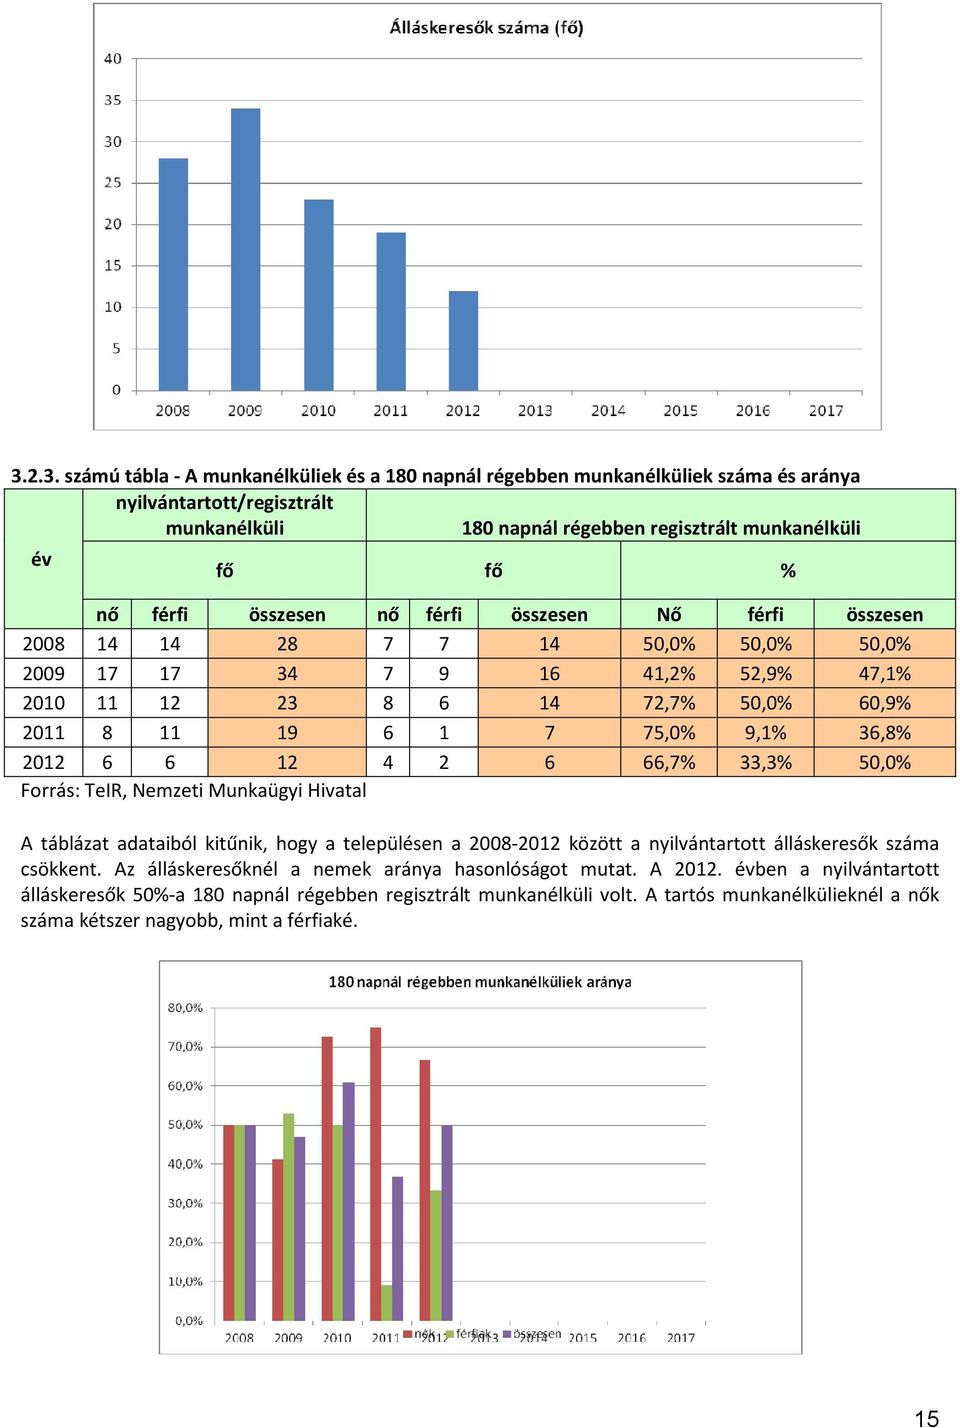 2012 6 6 12 4 2 6 66,7% 33,3% 50,0% Forrás: TeIR, Nemzeti Munkaügyi Hivatal A táblázat adataiból kitűnik, hogy a településen a 2008-2012 között a nyilvántartott álláskeresők száma csökkent.